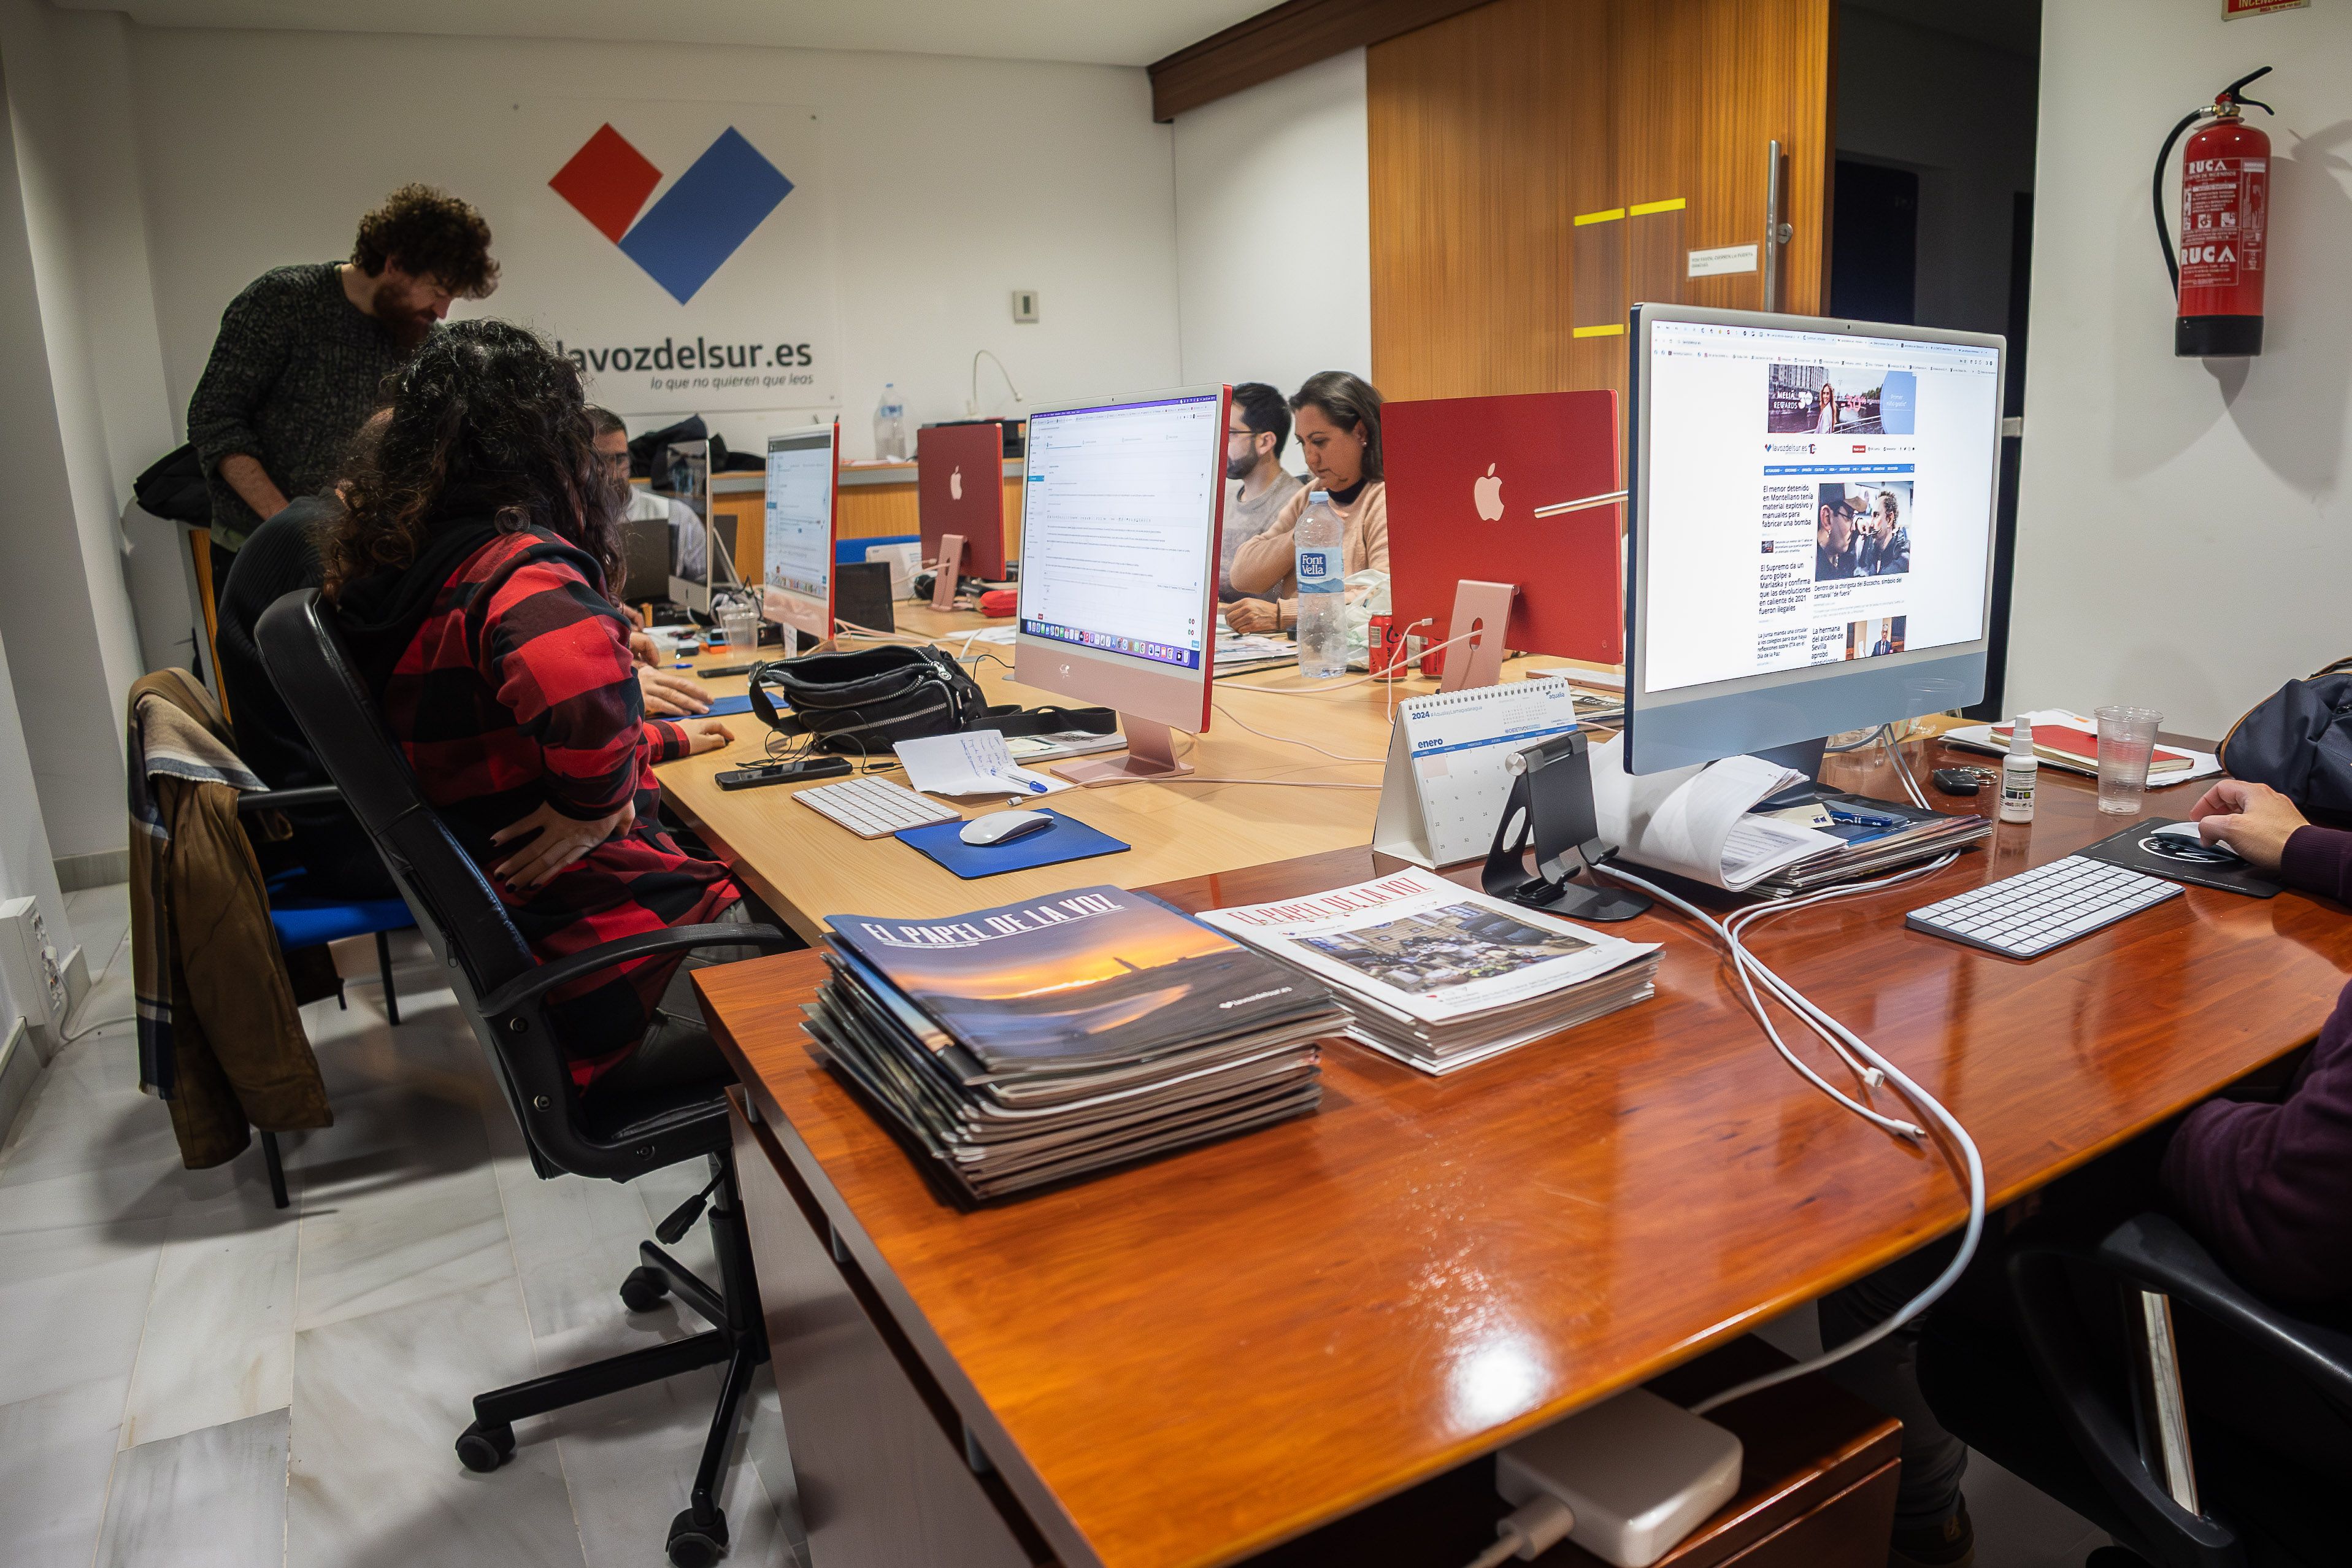 Parte de la redacción de lavozdelsur.es, trabajando en la edición digital del periódico andaluz, que crece en audiencia y facturación un año más.